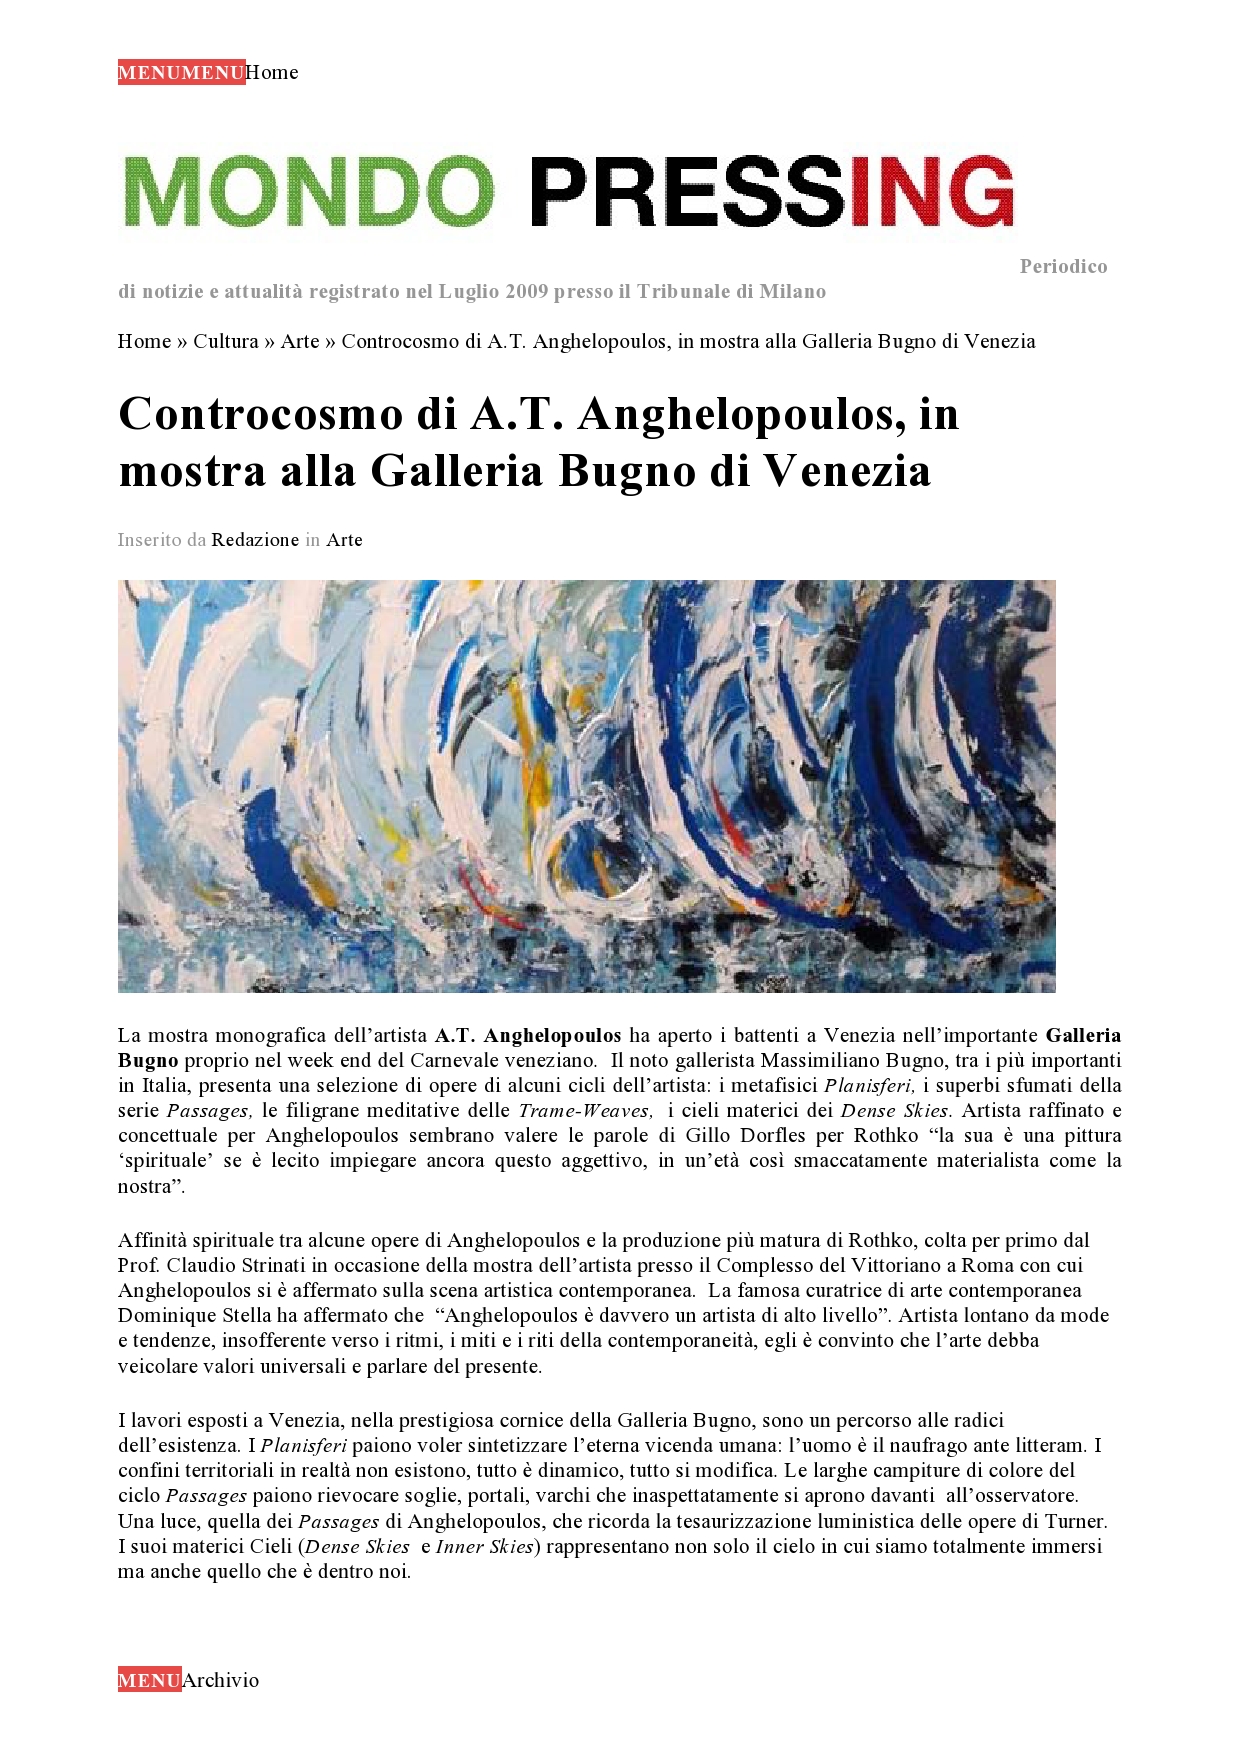 Articolo Mondo Pressing Mostra Controcosmo-page0001 (2)